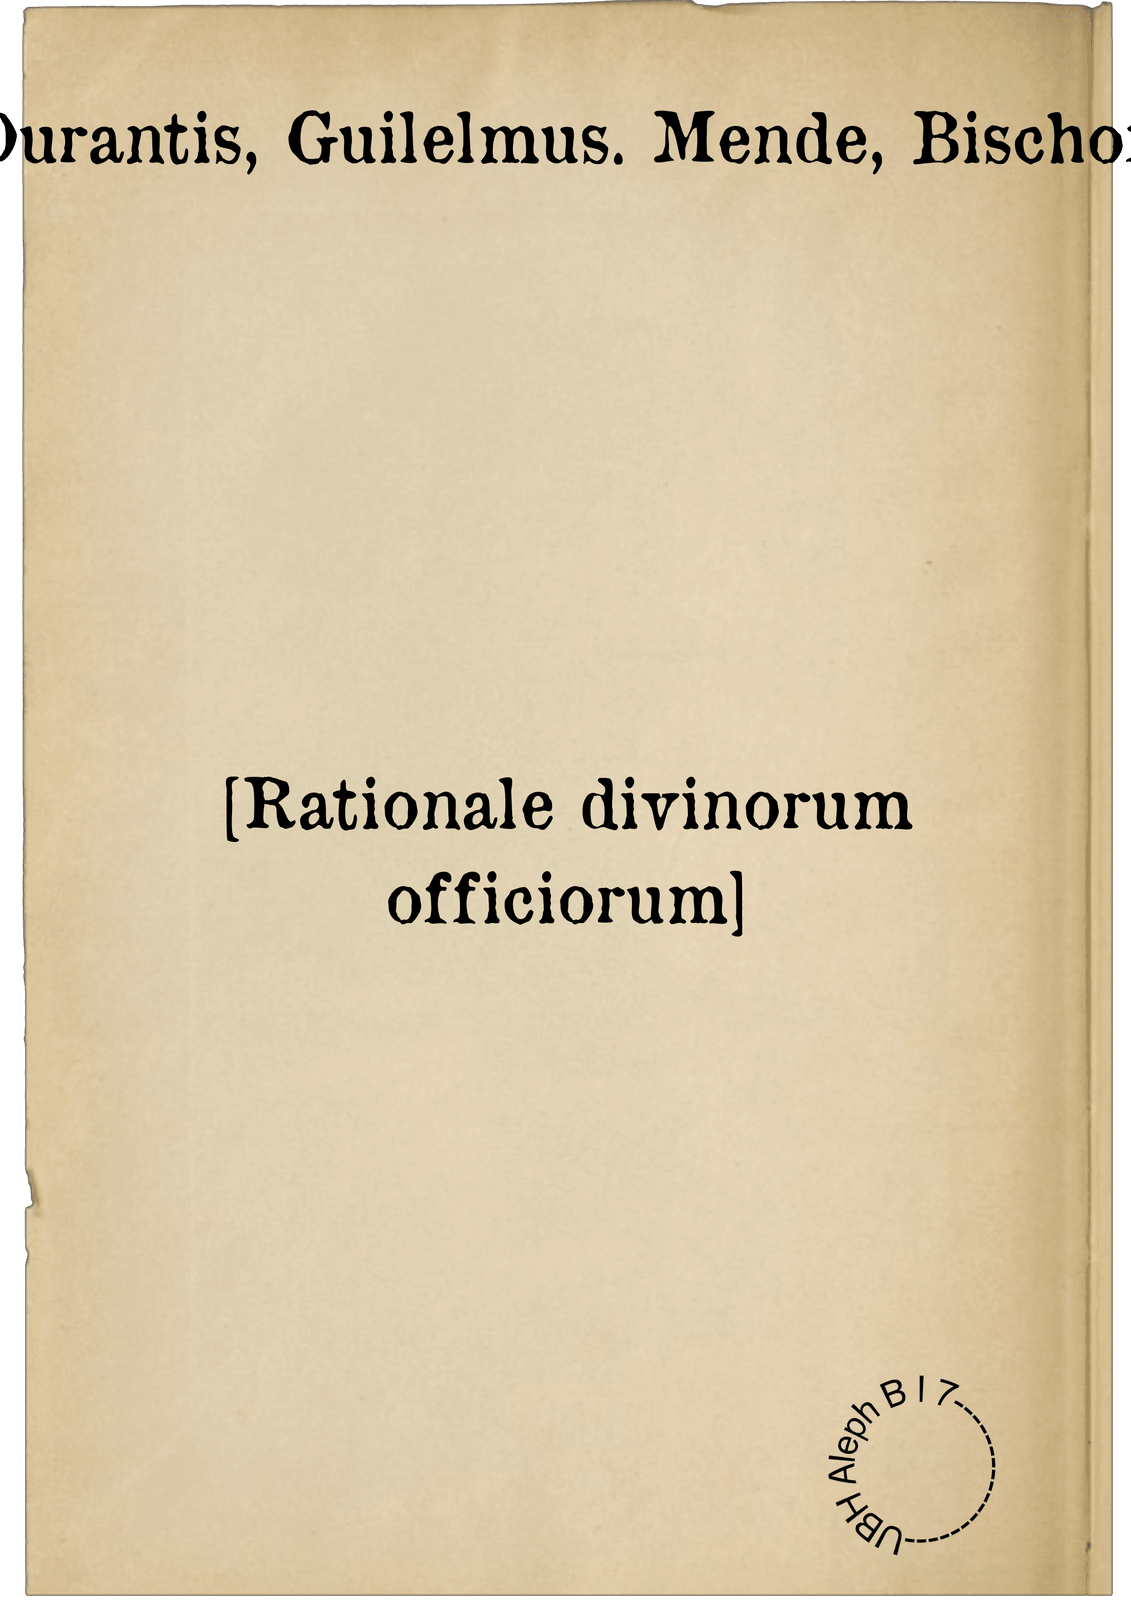 [Rationale divinorum officiorum]